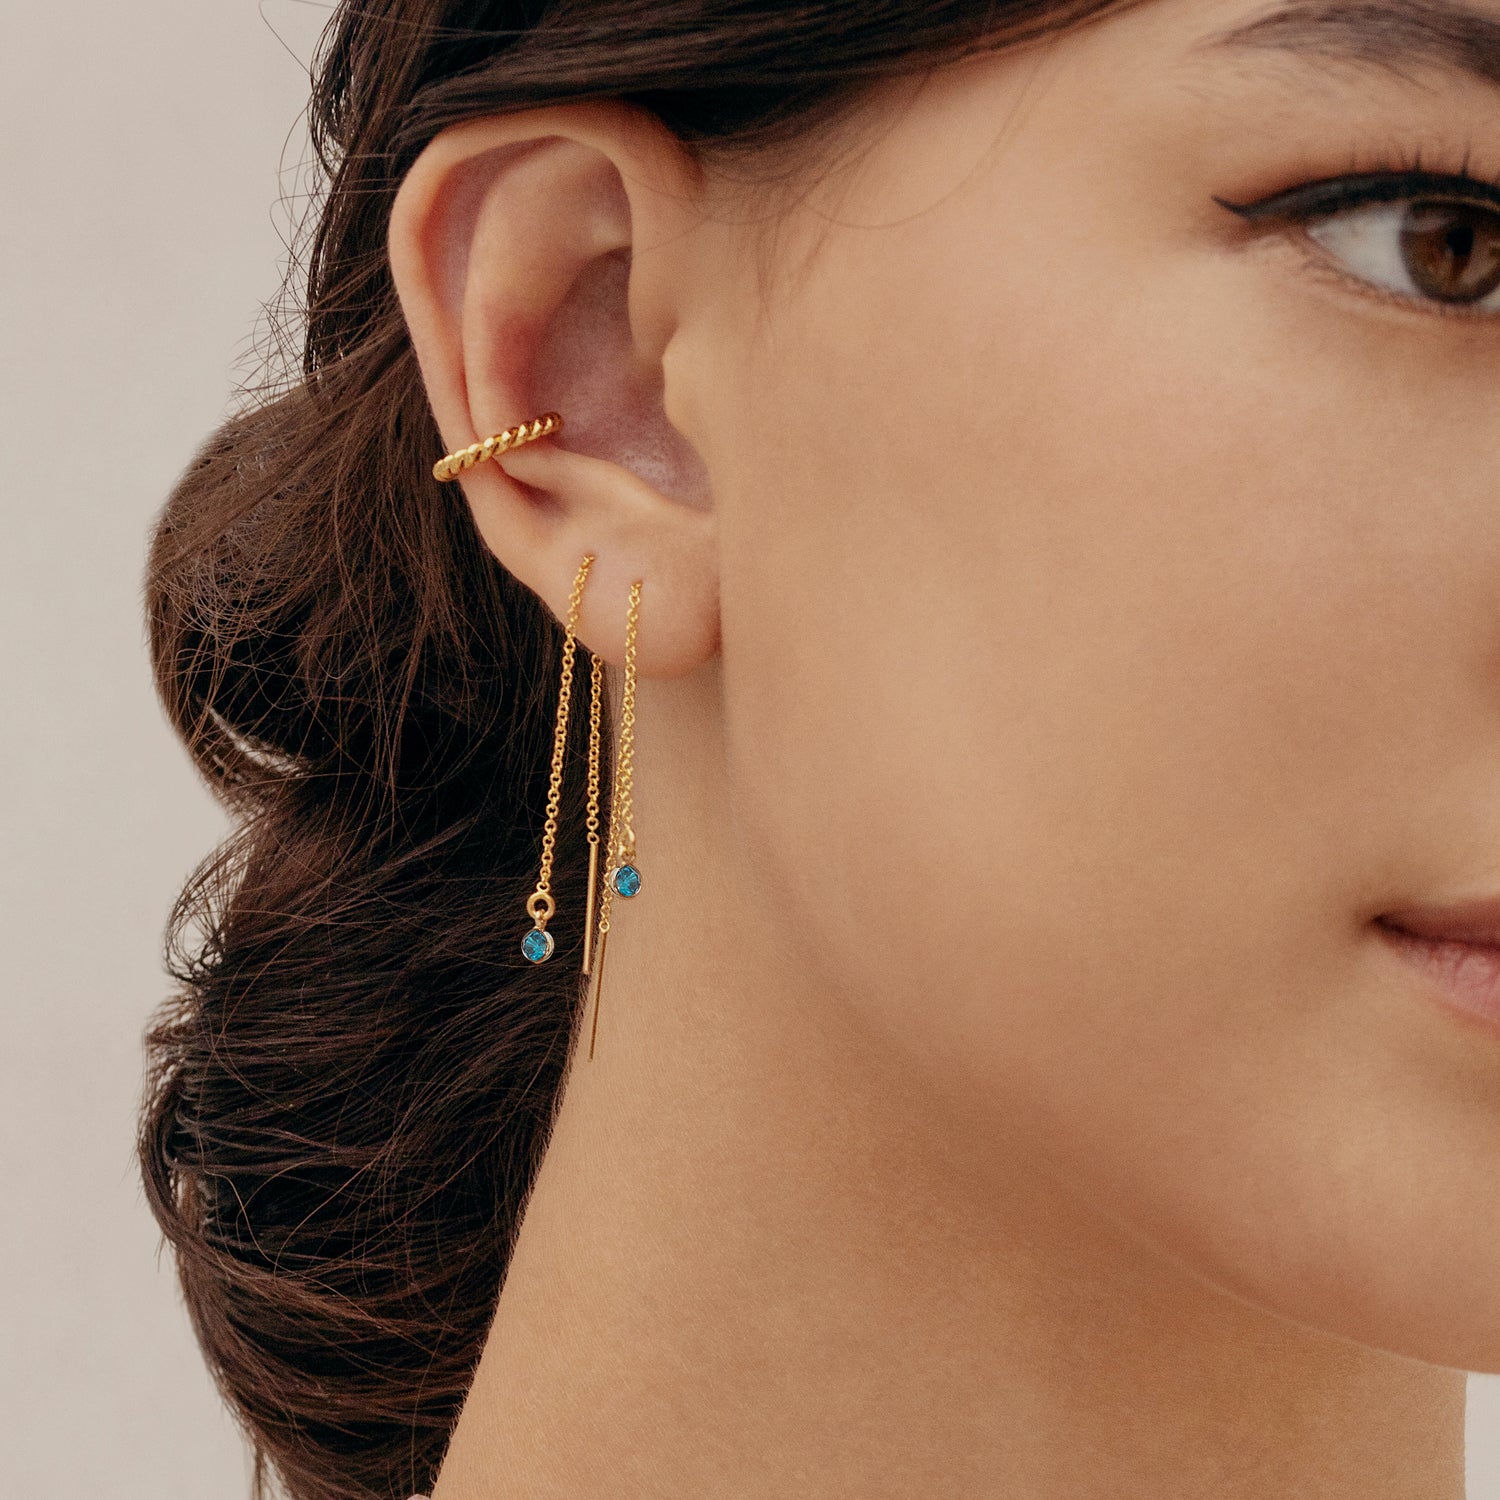 J&CO Jewellery Little Bezel Drop Earrings Gold